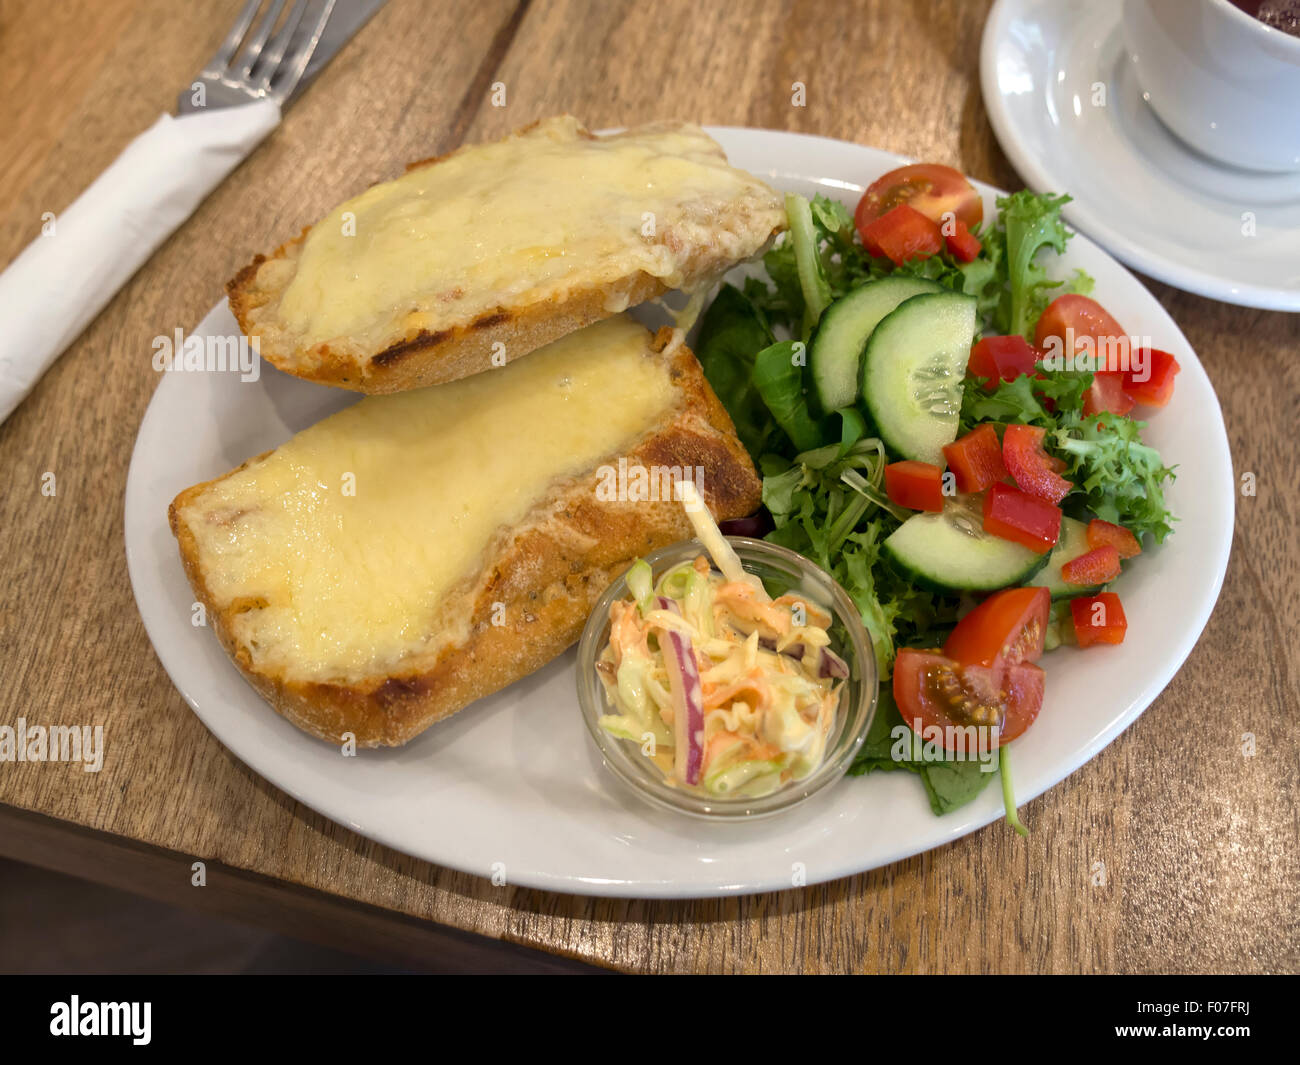 Toastie formaggio con insalata e coleslaw Foto Stock